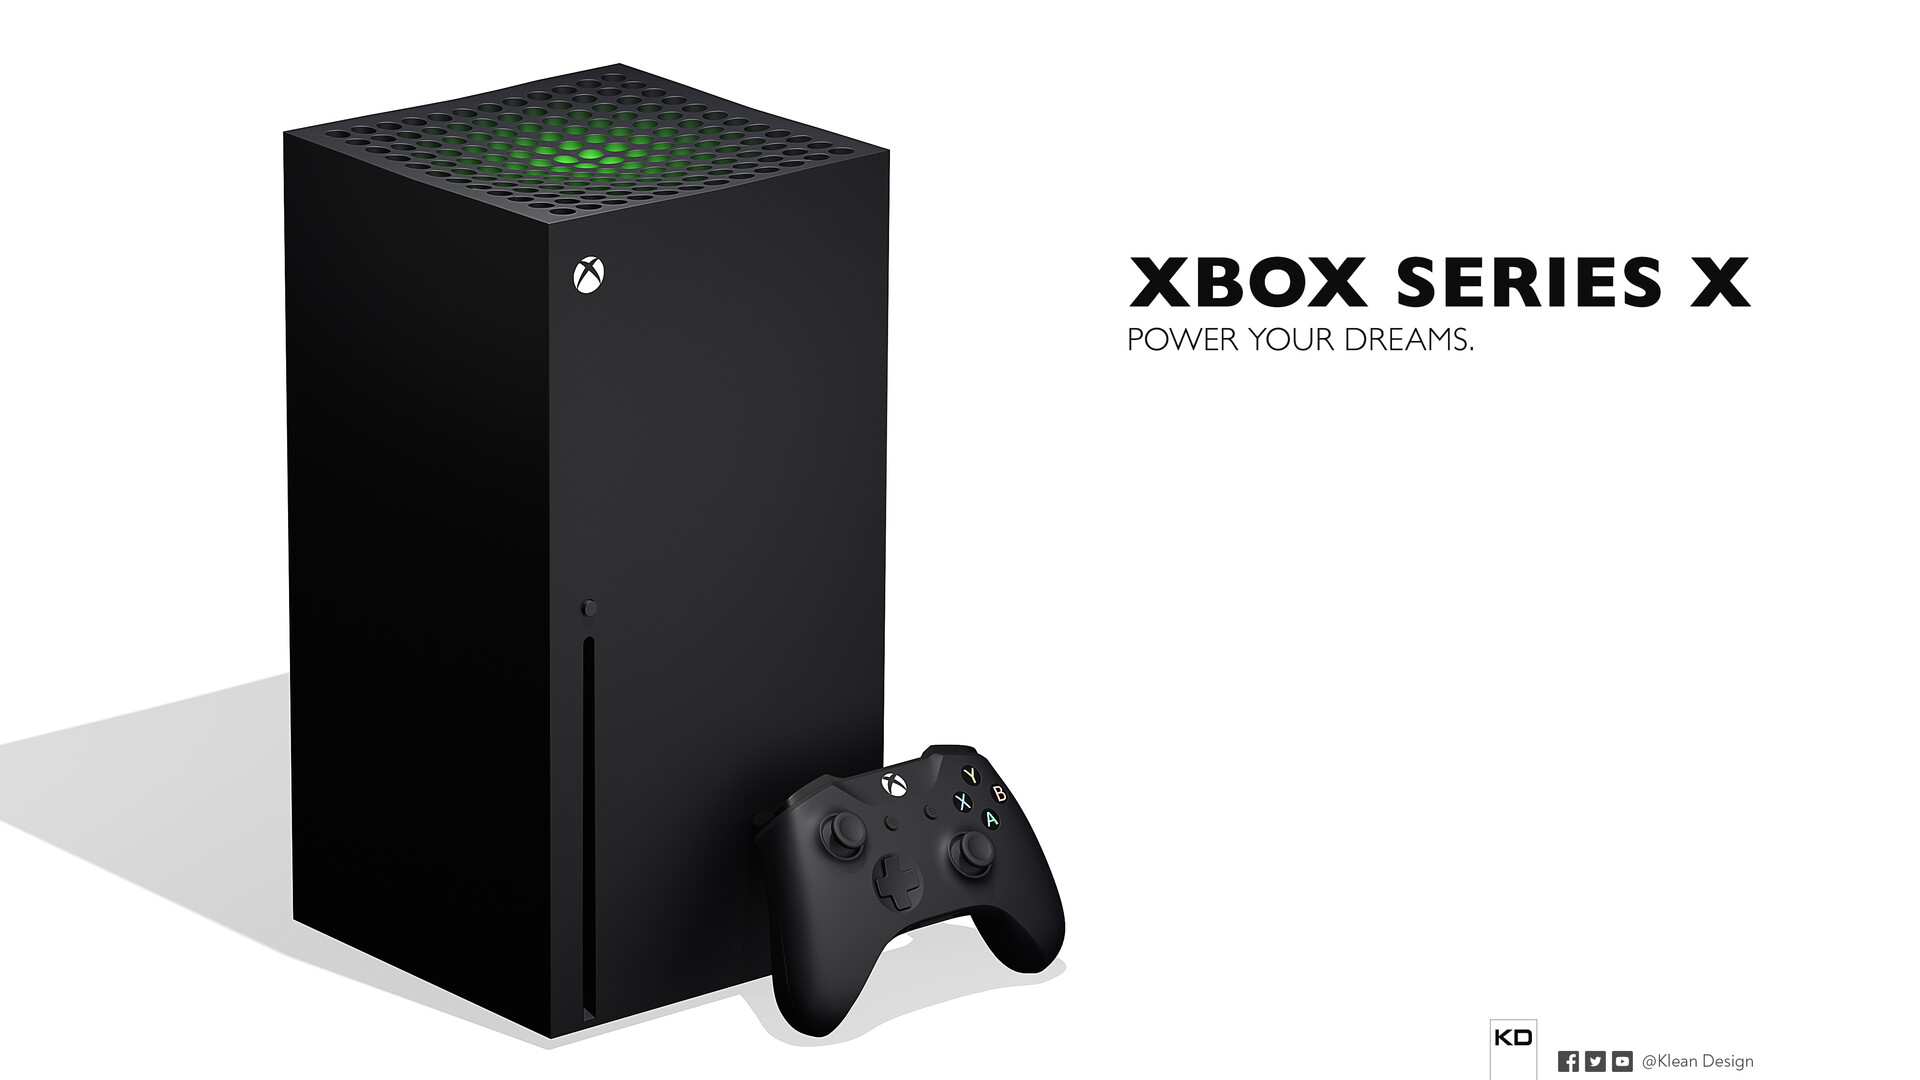 Xbox series купить в москве. Икс бокс Сириус Икс. Хбокс Сериес с. Microsoft Xbox Series x. Microsoft Xbox Series x 1000 ГБ SSD, черный.